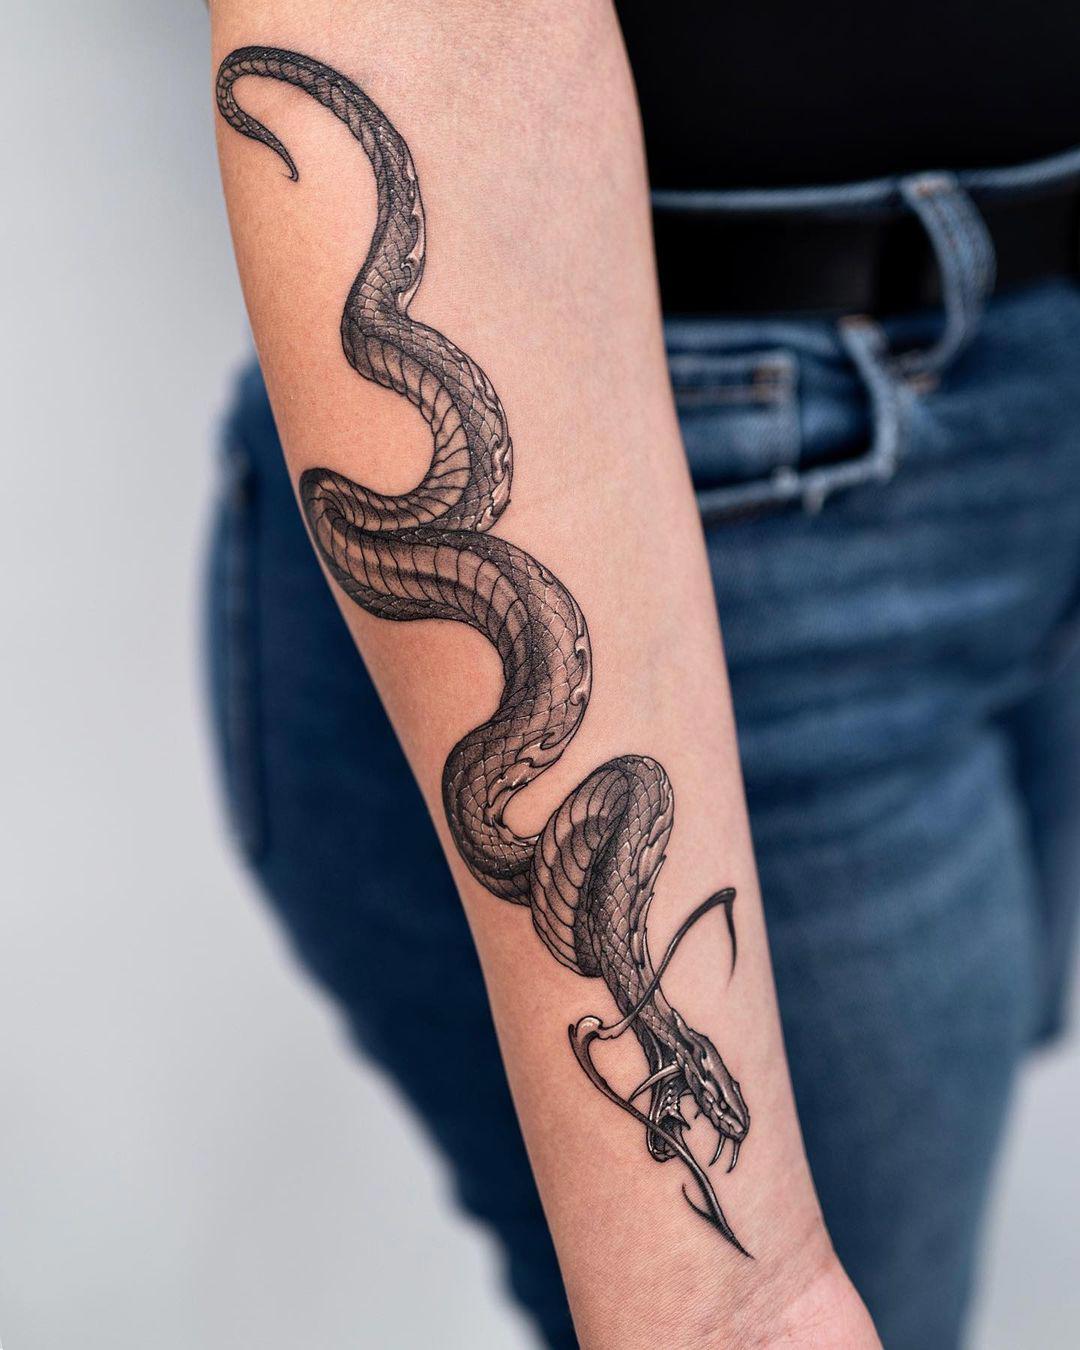 Tatuajes de serpientes en el brazo